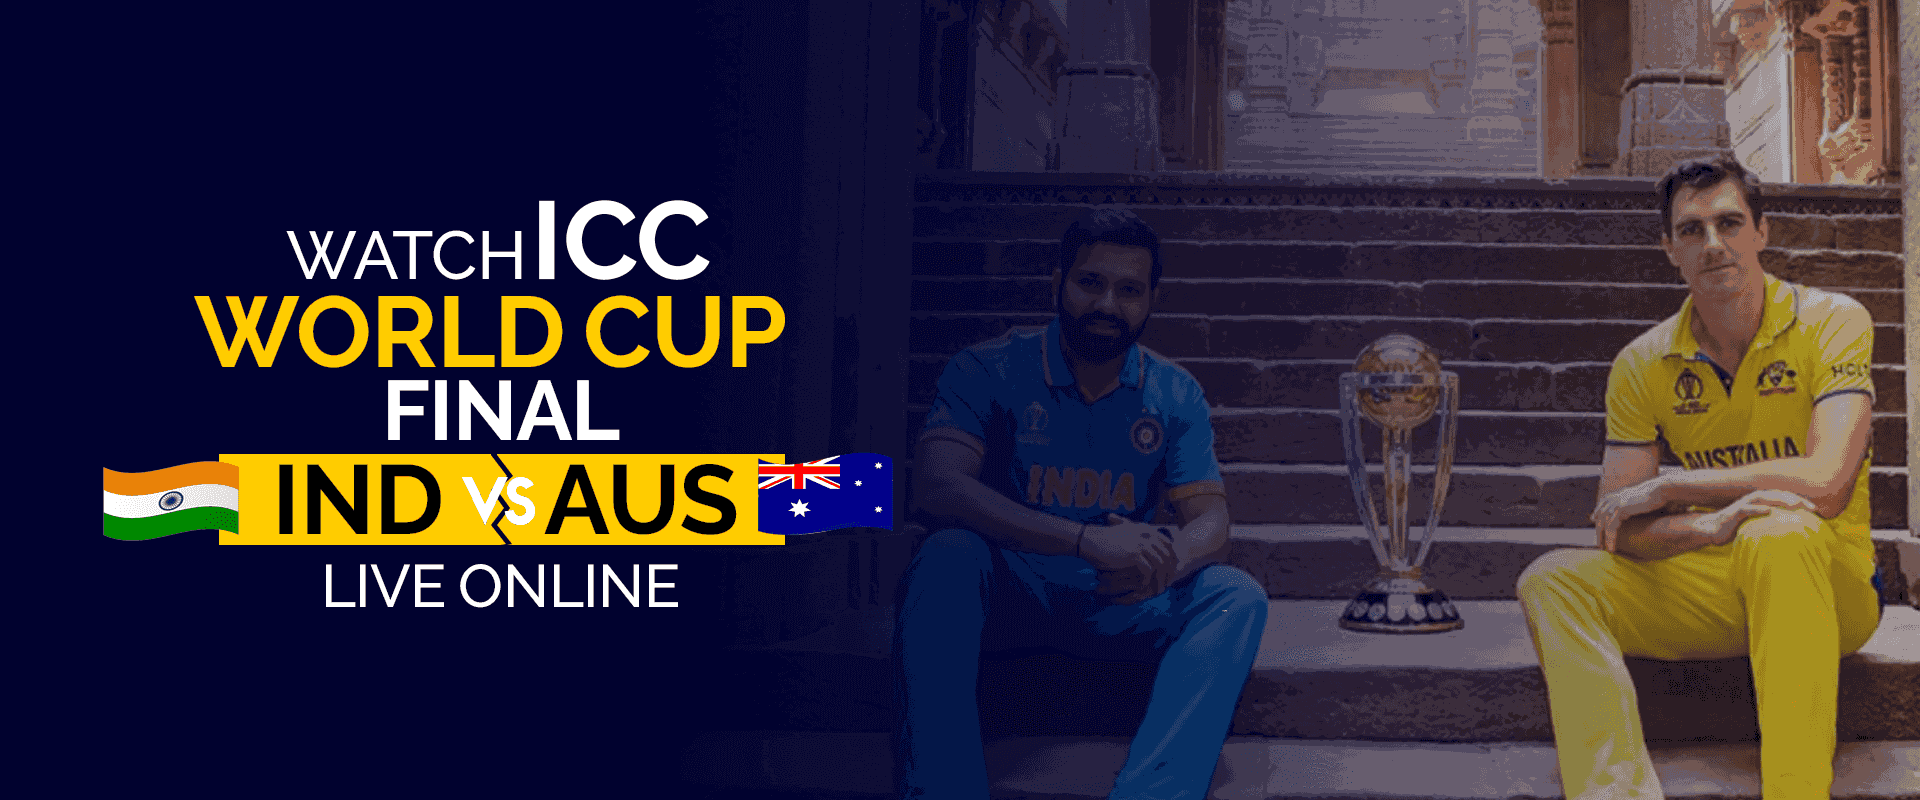 Смотрите финал чемпионата мира ICC IND против AUS в прямом эфире онлайн